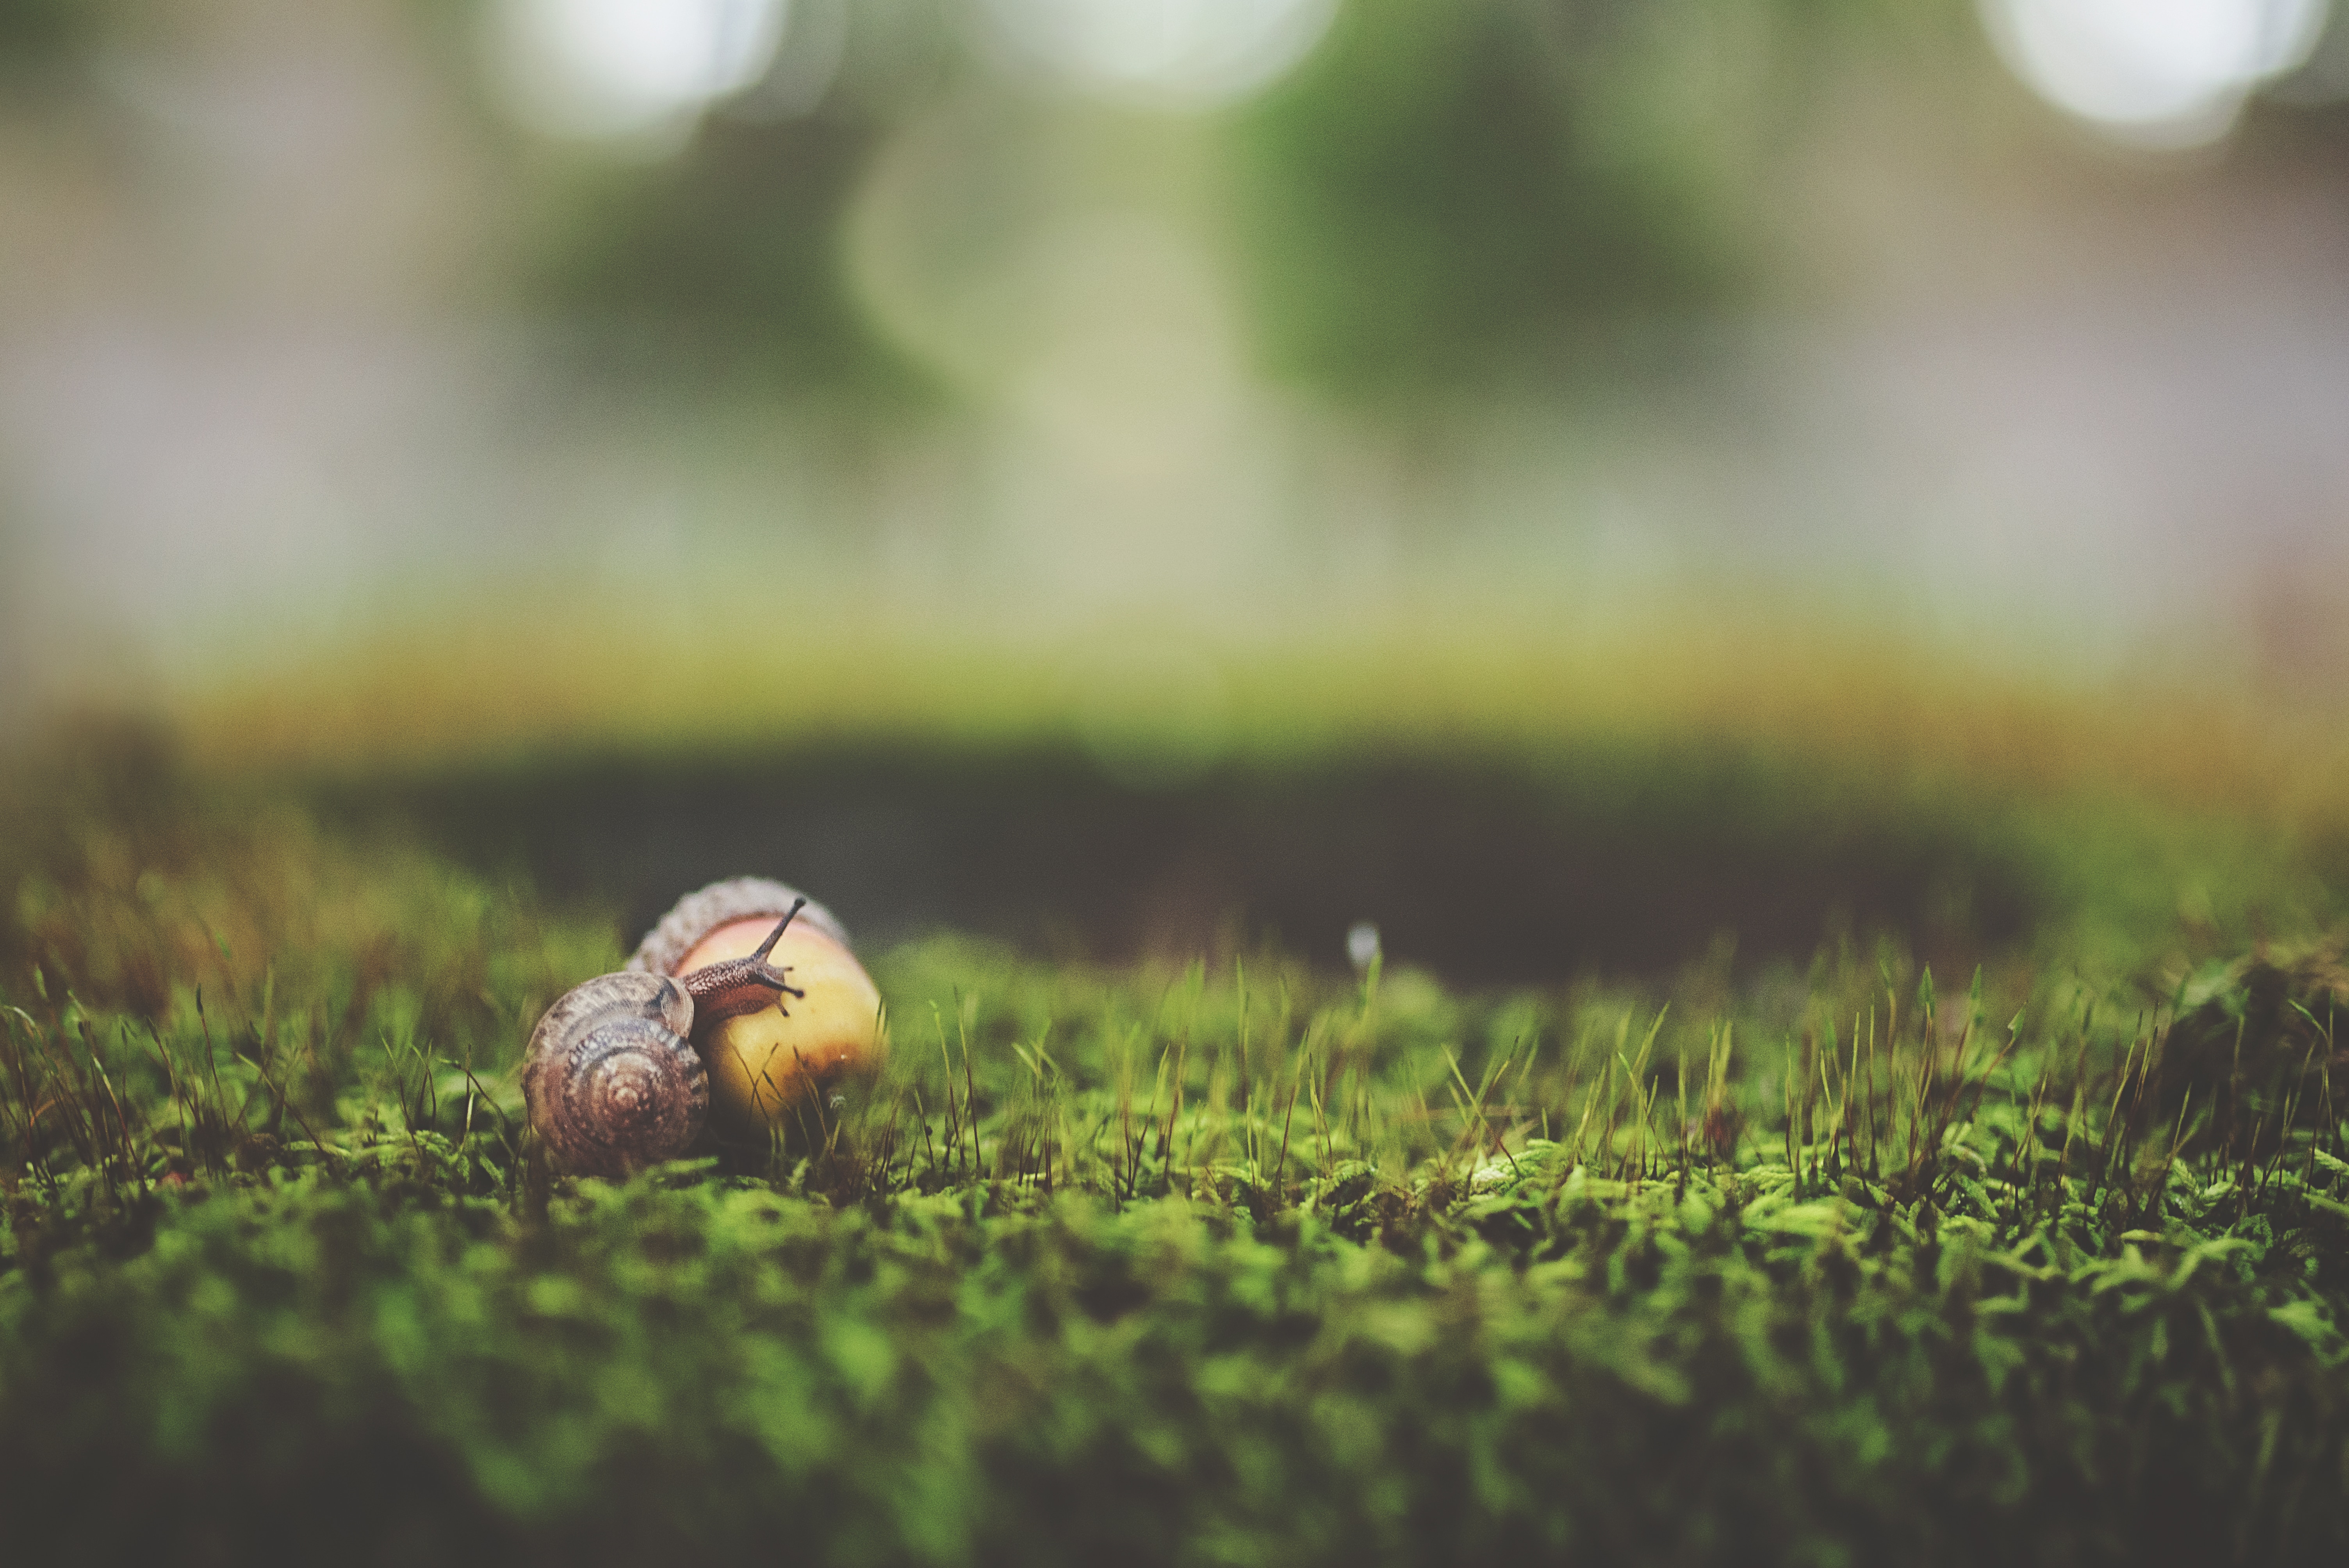 garden snail on acorn